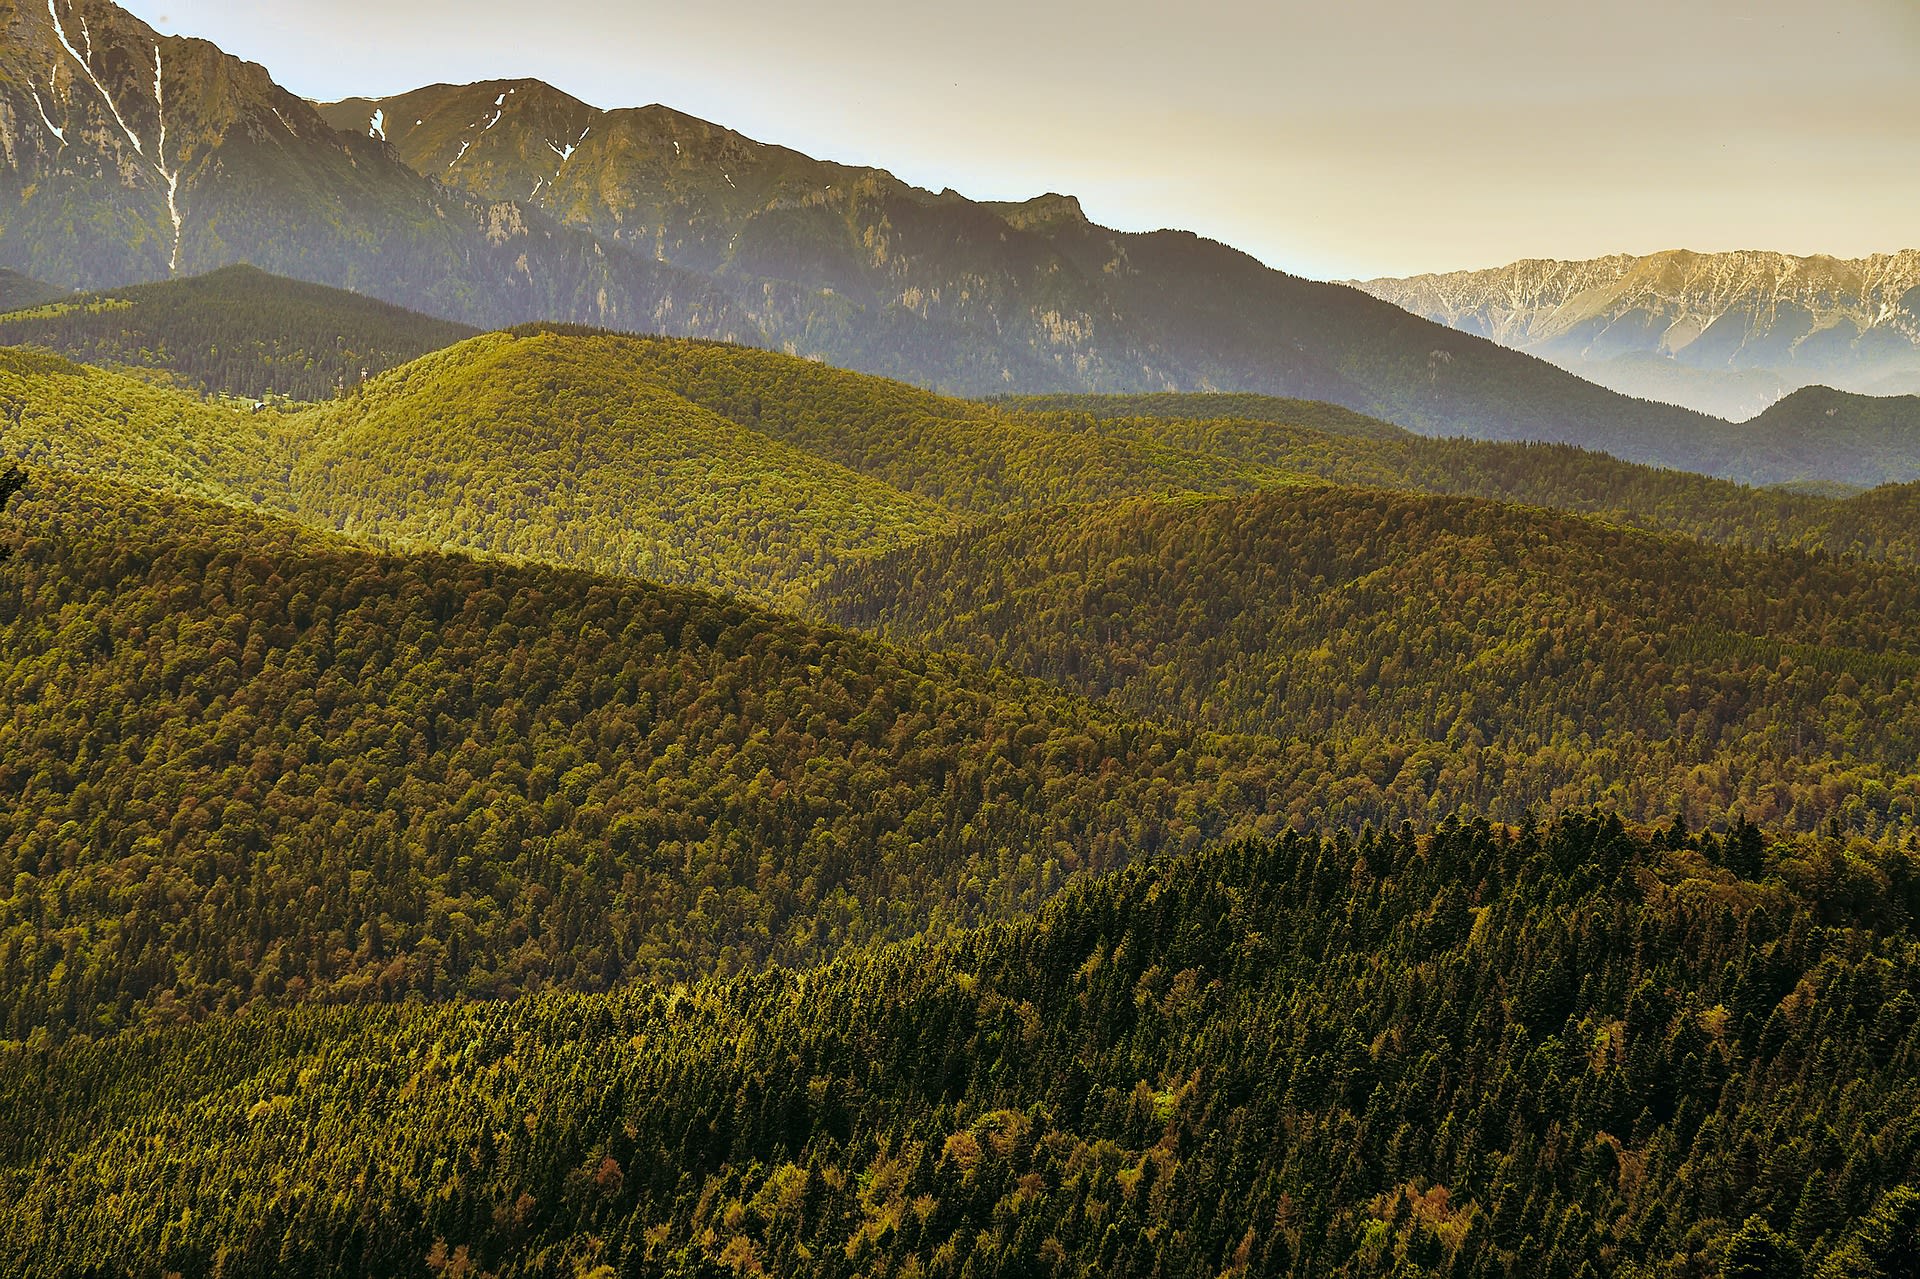 Rumunské lesy patří mezi nejrozsáhlejší zachovalé původní ekosystémy.